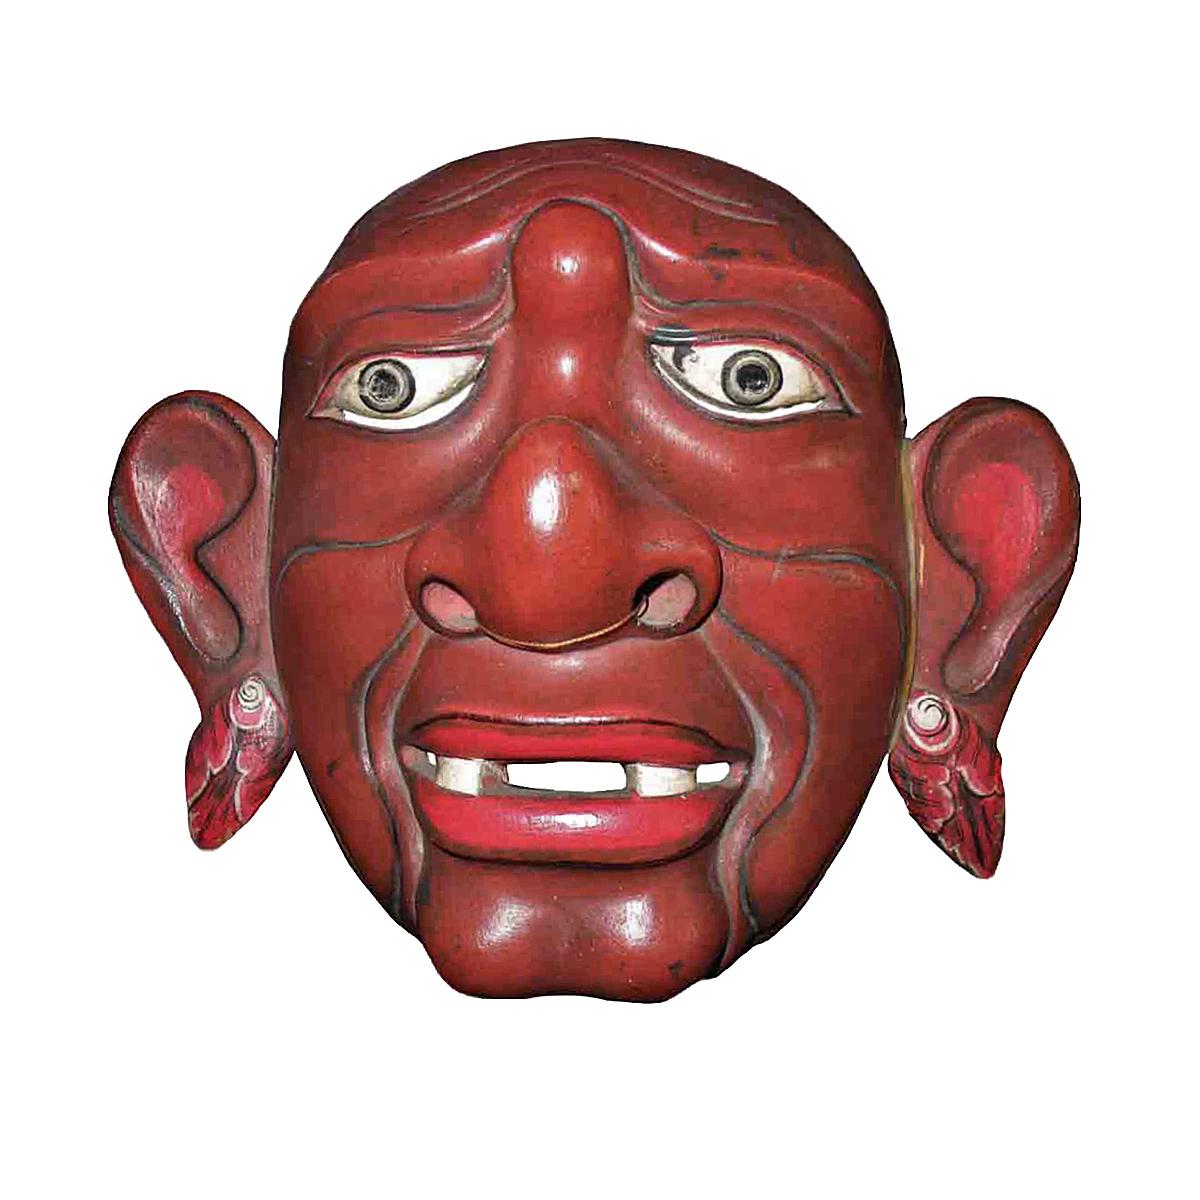 Eine alte Theatermaske aus Bali, Indonesien, ca. 1975-1980. 
Polychromiertes, handgeschnitztes Teakholz, montiert auf einem schwarzen Metallständer.

Diese Art von Maske wird bei indonesischen Topeng- oder Maskentheatertänzen verwendet, bei denen